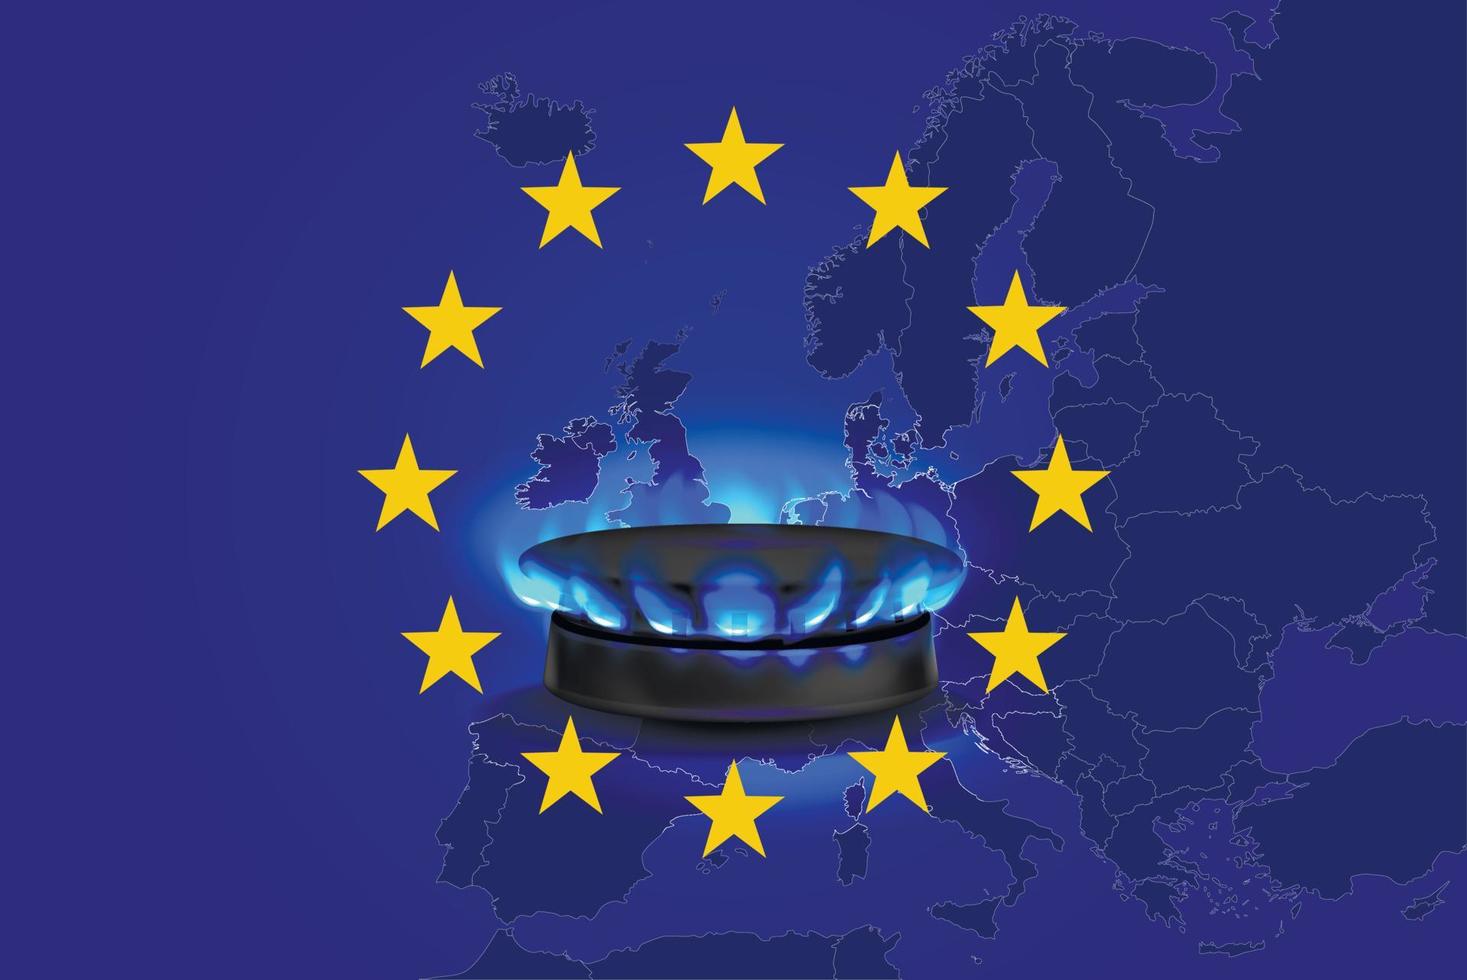 crise du gaz dans l'ue. flamme de gaz brûlante d'une cuisinière à gaz sur fond de carte et du drapeau de l'union européenne. bannière commerciale. illustration vectorielle vecteur